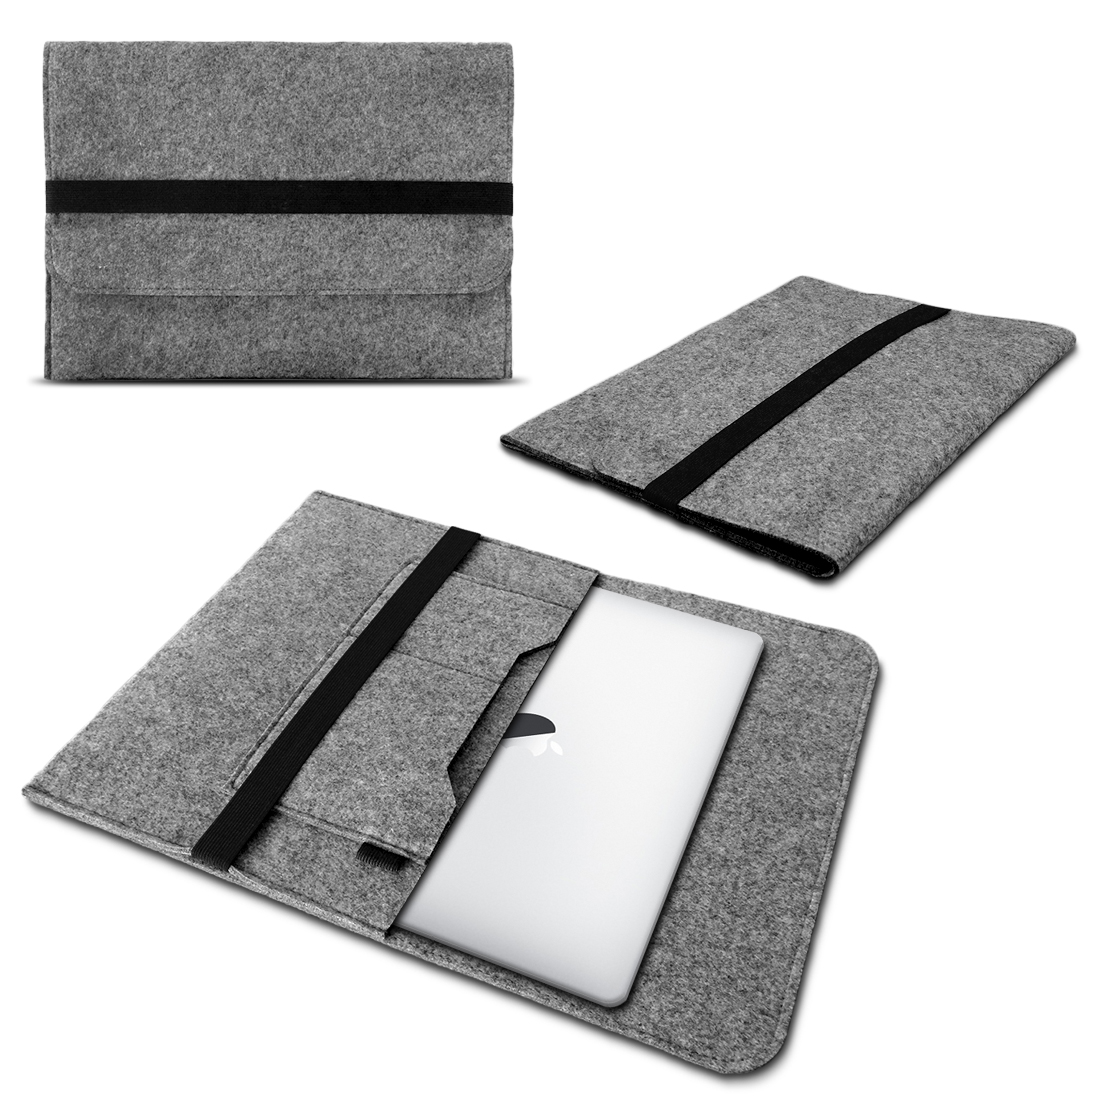 Super Leichte Geschnitzte Laptop Tasche Aus Woll Filz Für Macbook Lenovo W6J3 